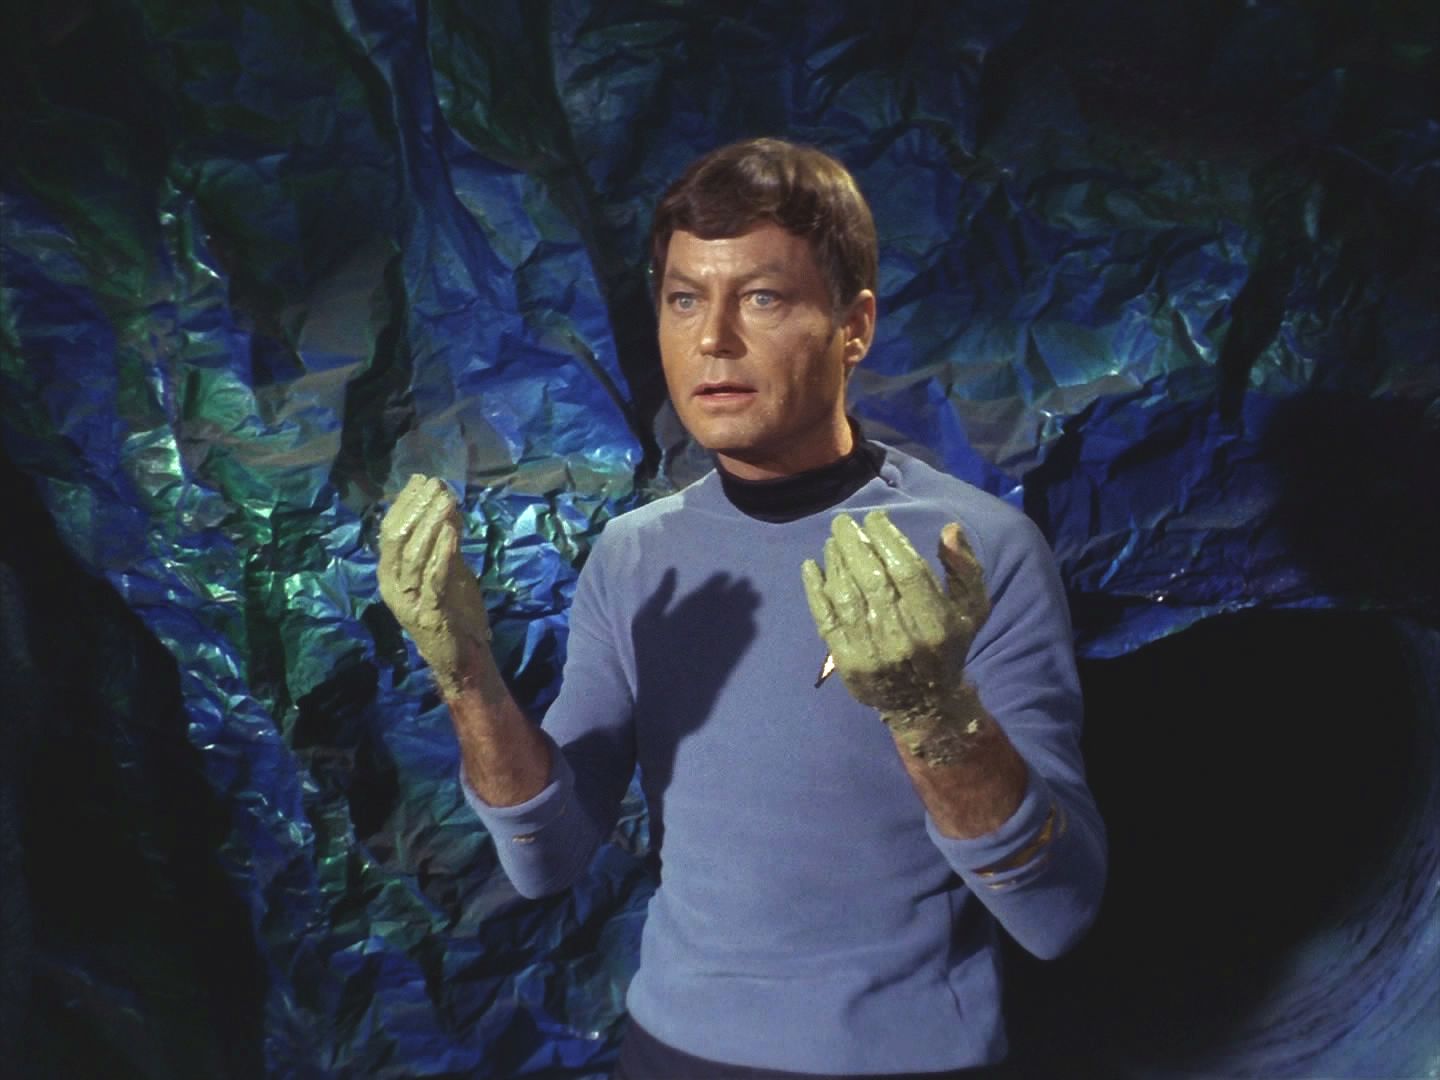 Doktor si poradil, i když se při tom cítil jako zedník, ne jako lékař. Spravilo to půl metráku termobetonu, materiálu s vysokým obsahem křemíku. Spock zatím vyjednal dohodu.